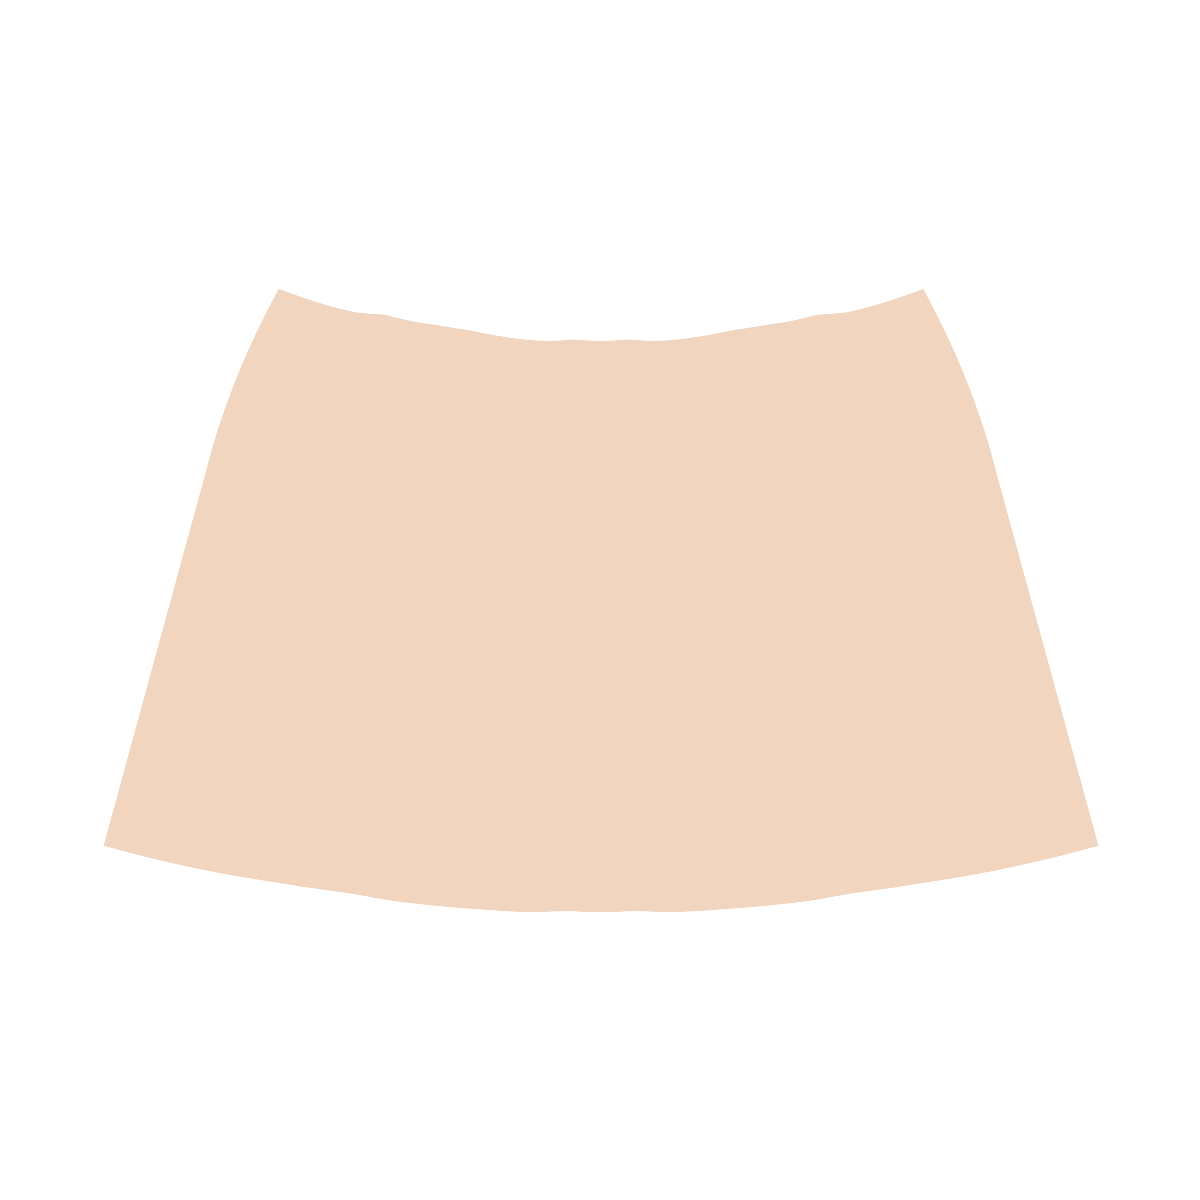 Tender Peach Mnemosyne Women's Crepe Skirt (Model D16)